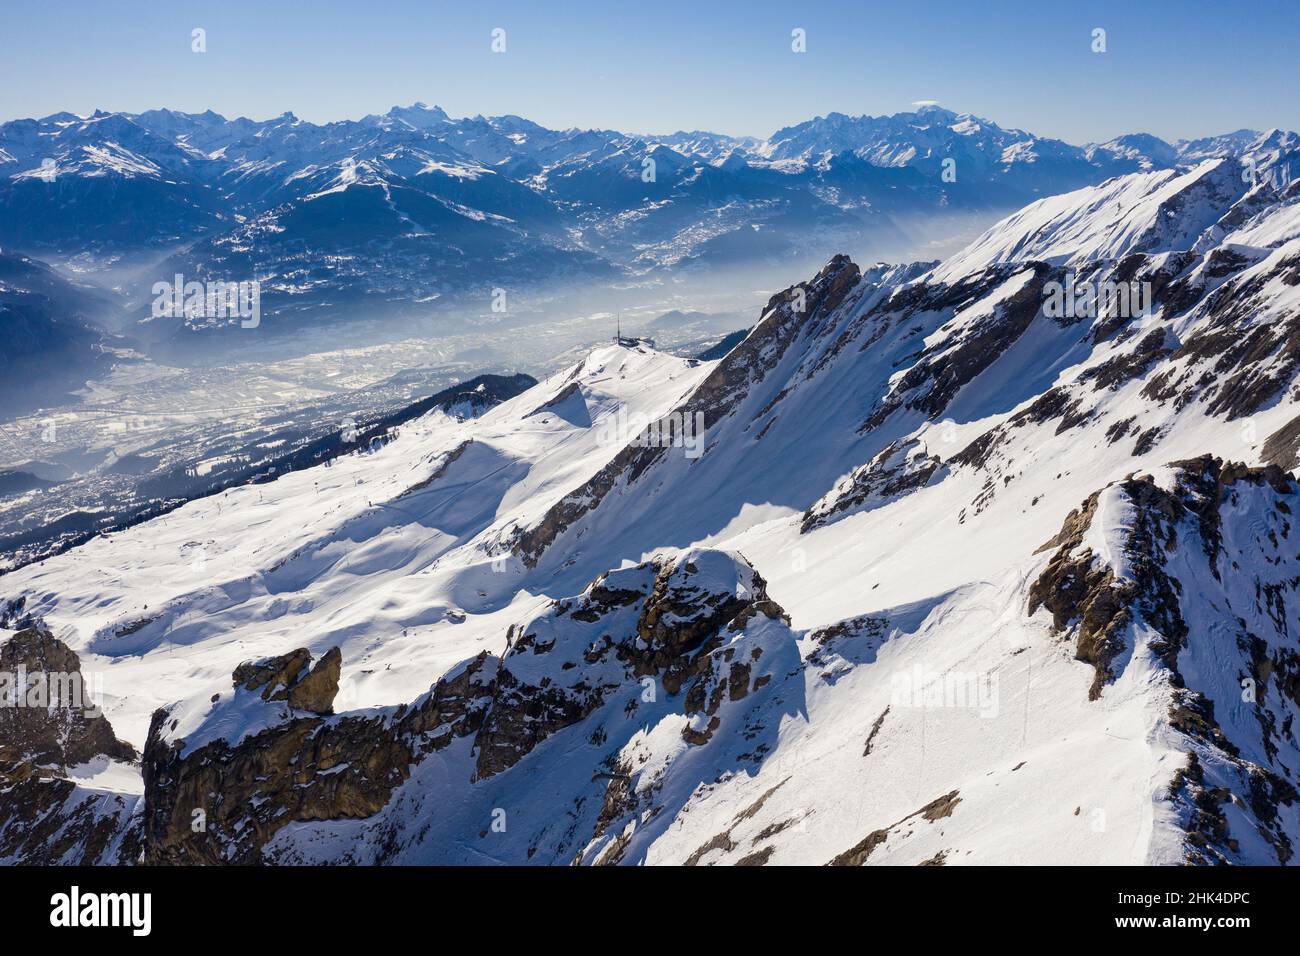 Espectacular vista aérea de la montaña de los alpes sobre la estación de esquí de Anzere con vistas al valle del Ródano y Sion en Valais (Suiza). Foto de stock